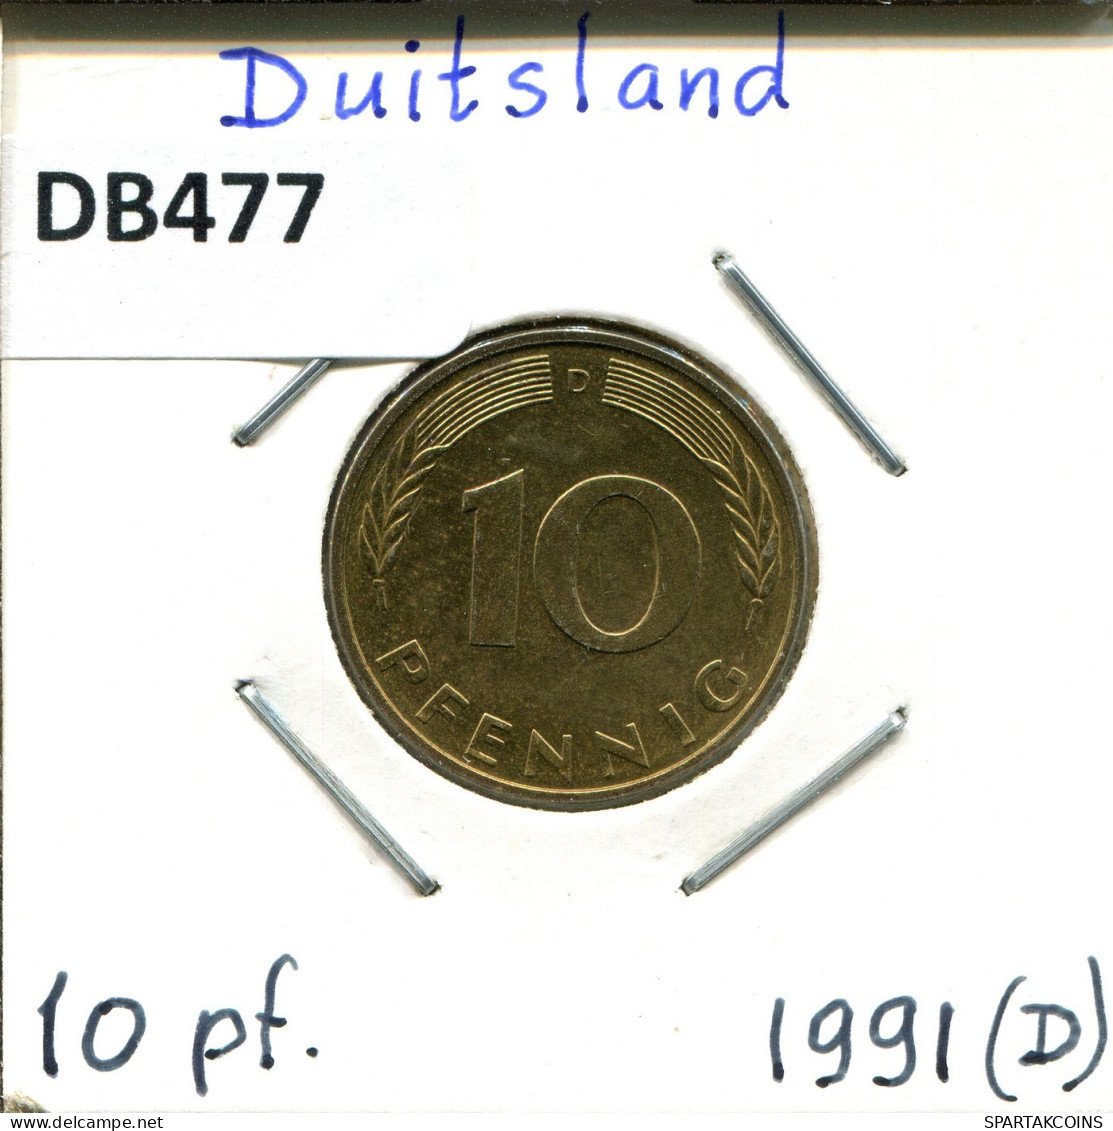 10 PFENNIG 1991 D WEST & UNIFIED GERMANY Coin #DB477.U.A - 10 Pfennig